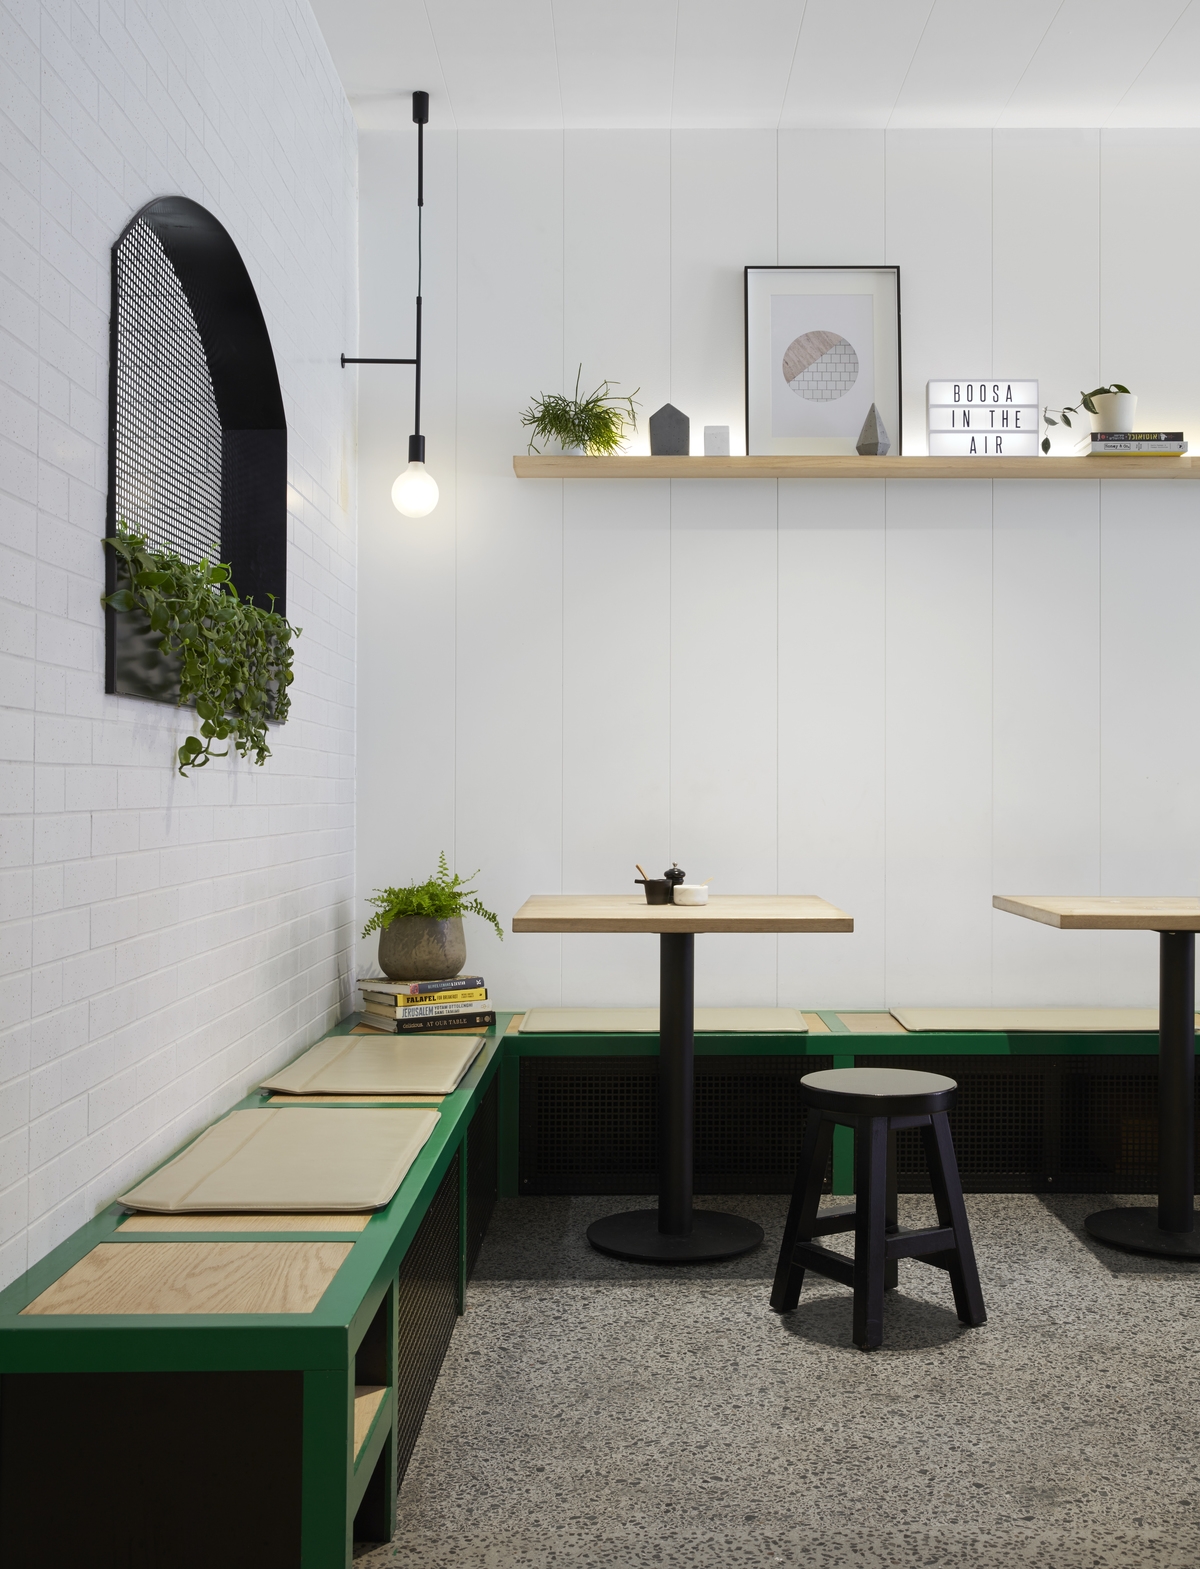 图片[6]|博萨咖啡馆|ART-Arrakis | 建筑室内设计的创新与灵感